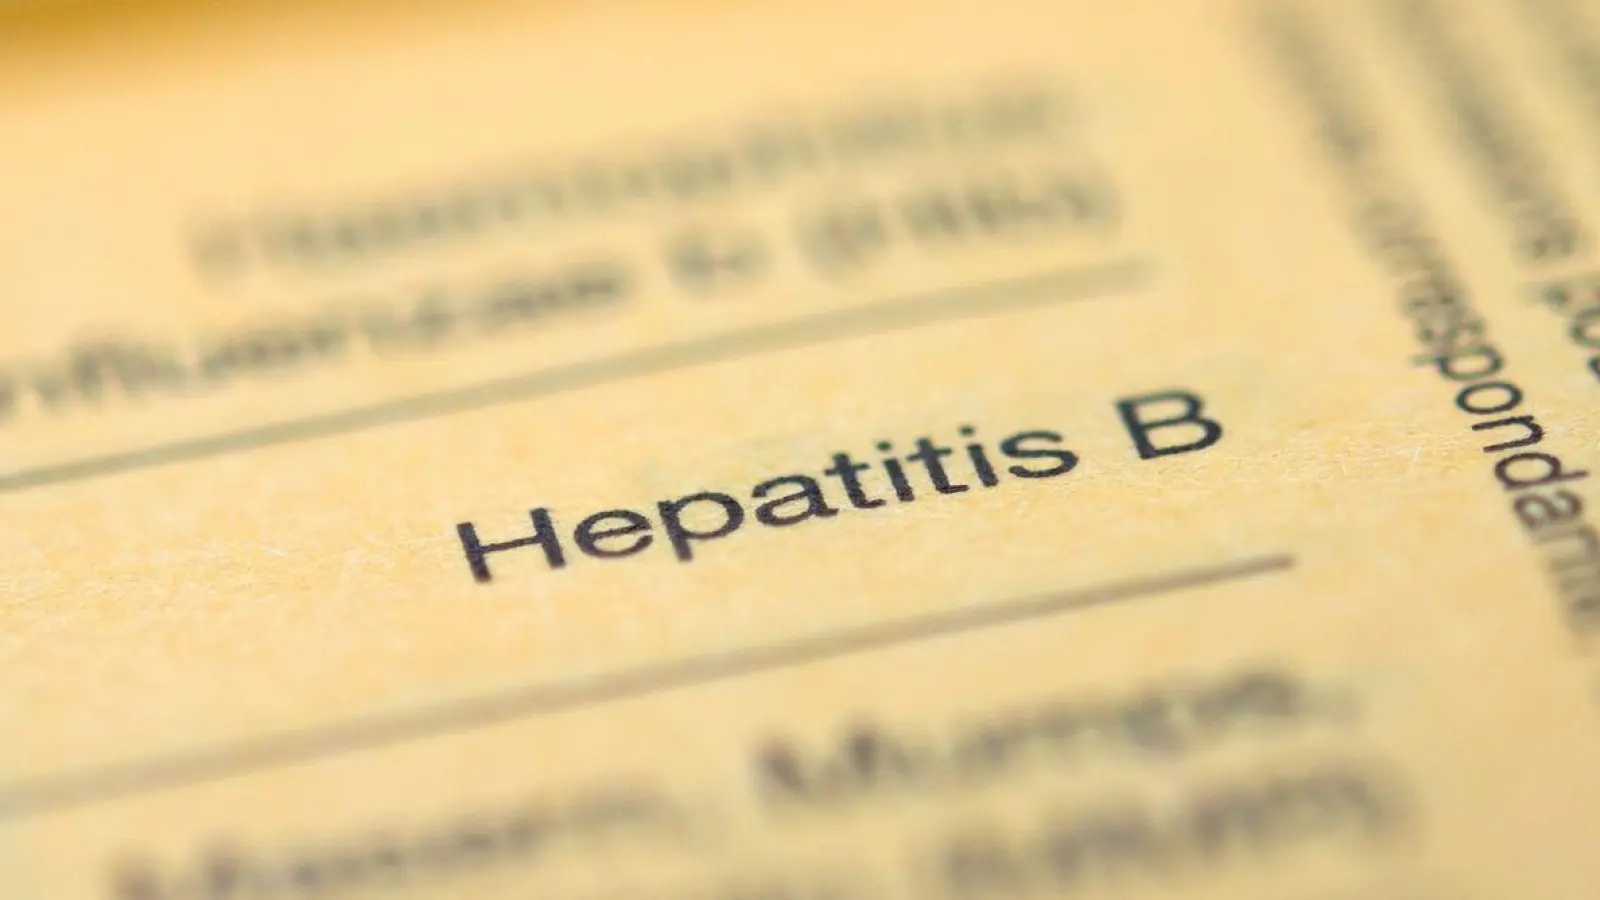 Die WHO registrierte bei den Hepatitis-Neuinfektionen einen leichten Rückgang. Dies deute darauf hin, dass Impfkampagnen und andere Vorbeugungsmaßnahmen Wirkung zeigen. (Foto: Daniel Naupold/dpa)